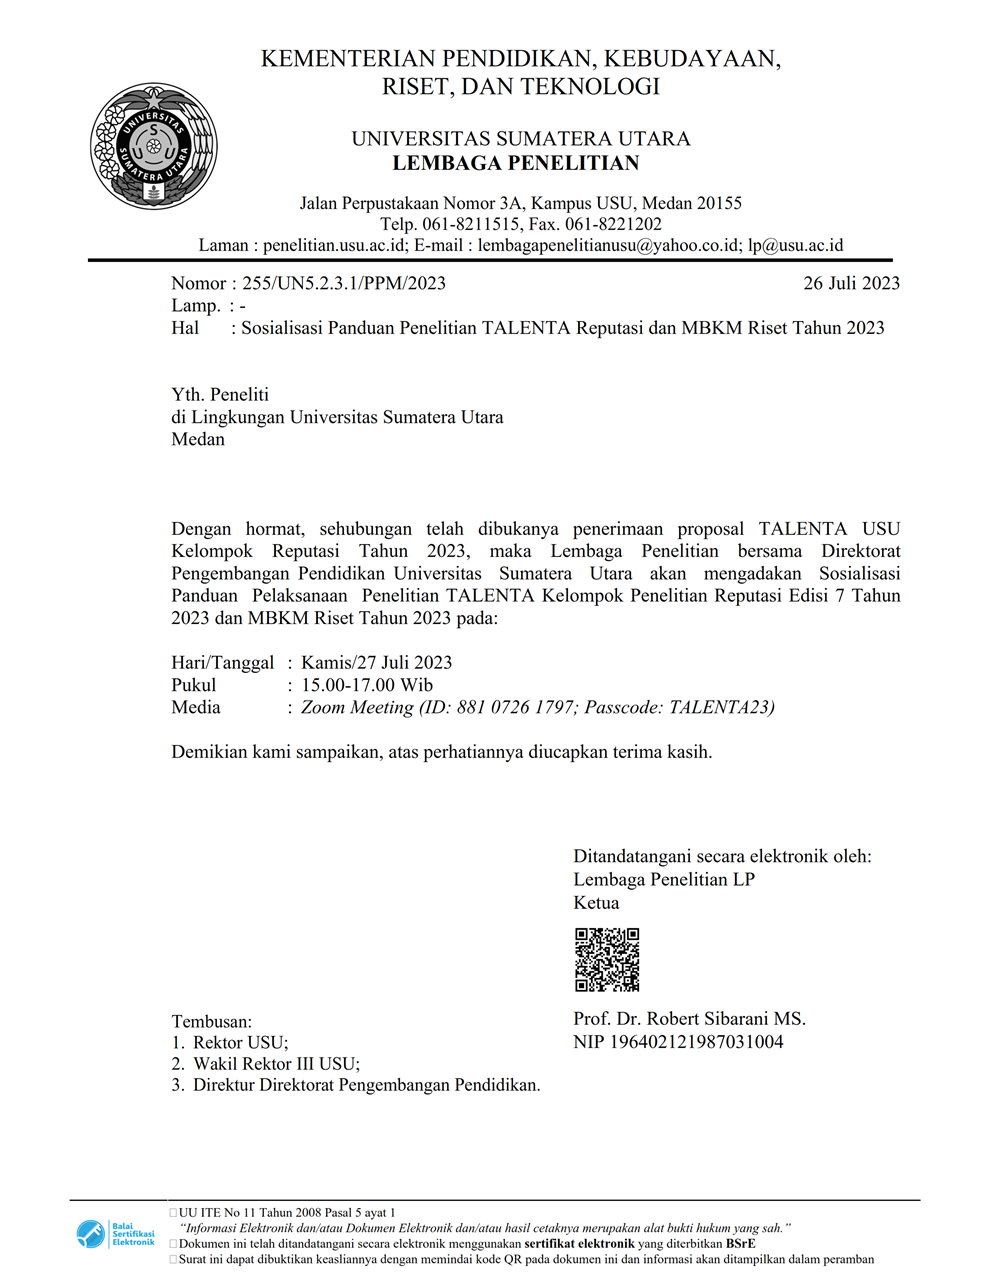 Undangan Sosialisasi Panduan TALENTA REPUTASI dan MBKM Riset 2023 001